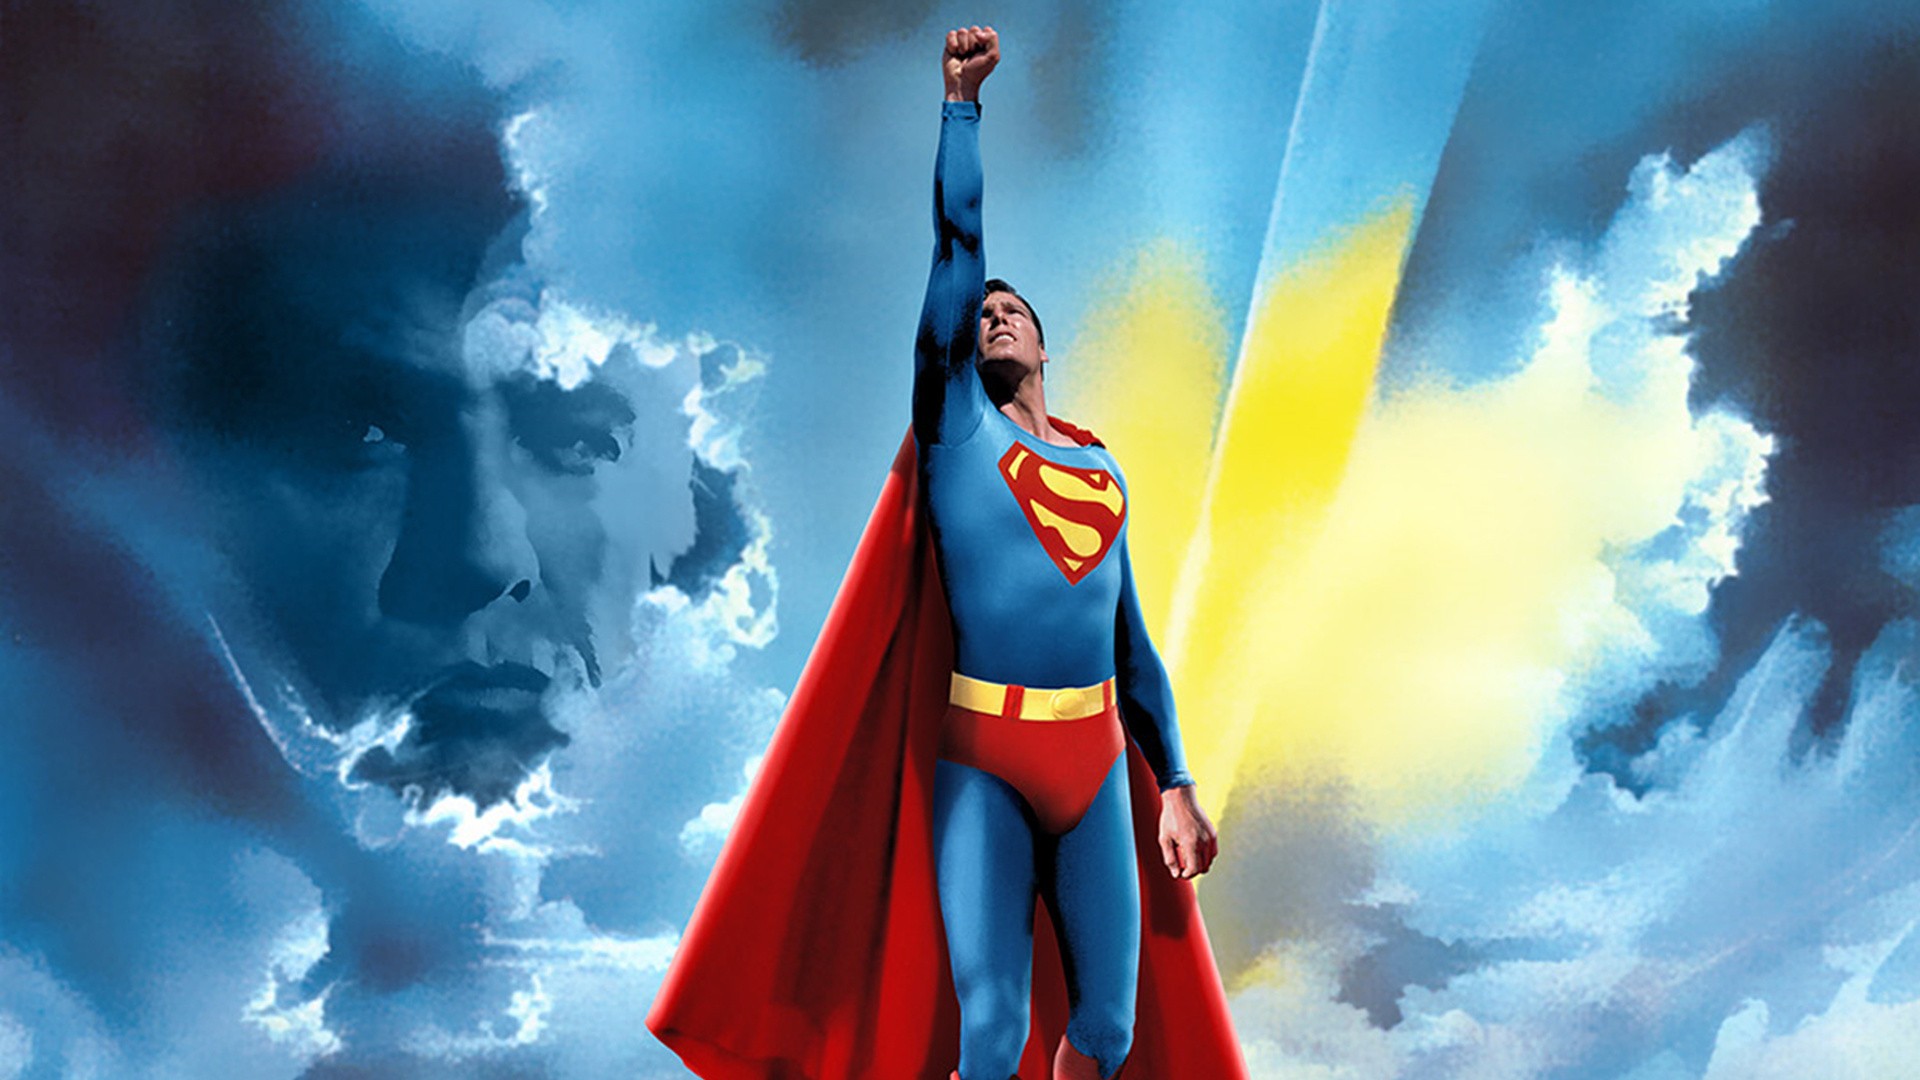 Скачать обои Супермен (1978) на телефон бесплатно